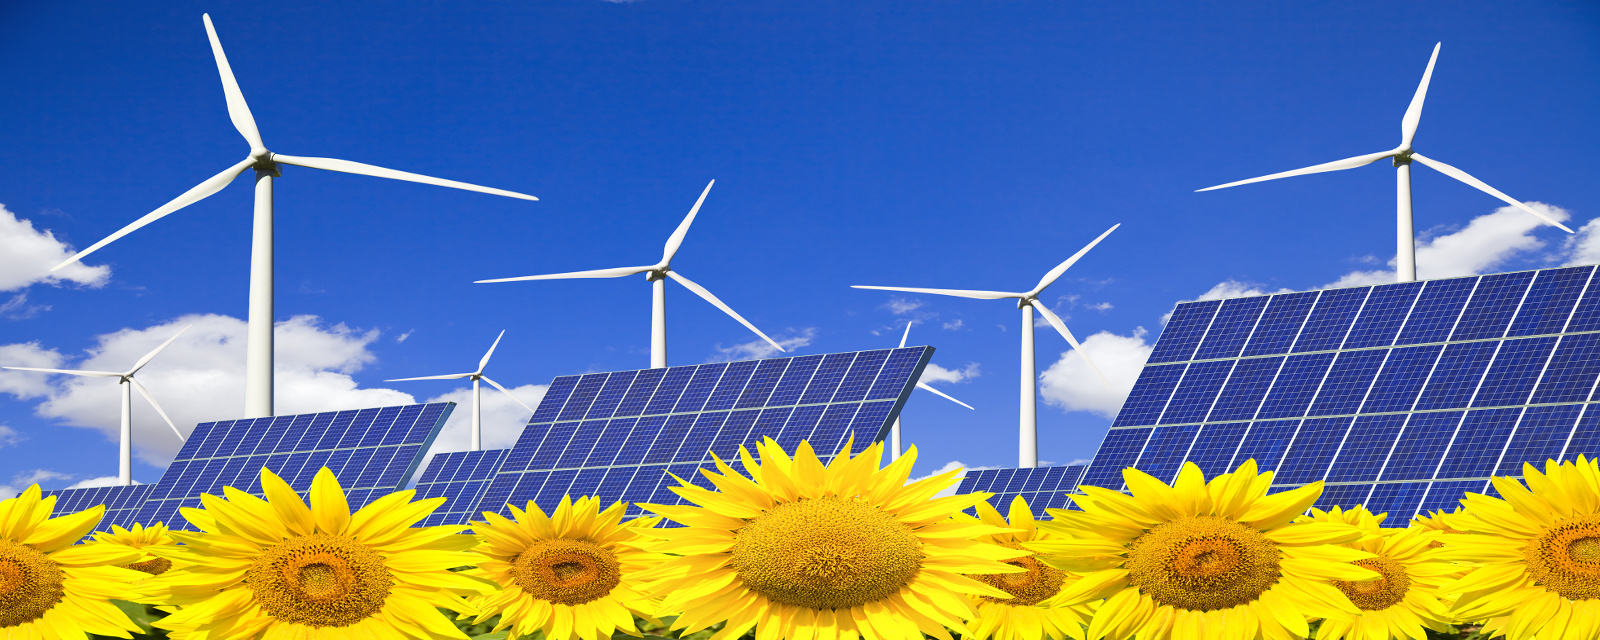 Ecosolar energías renovables con sistemas, fiables económicos y ecológicos